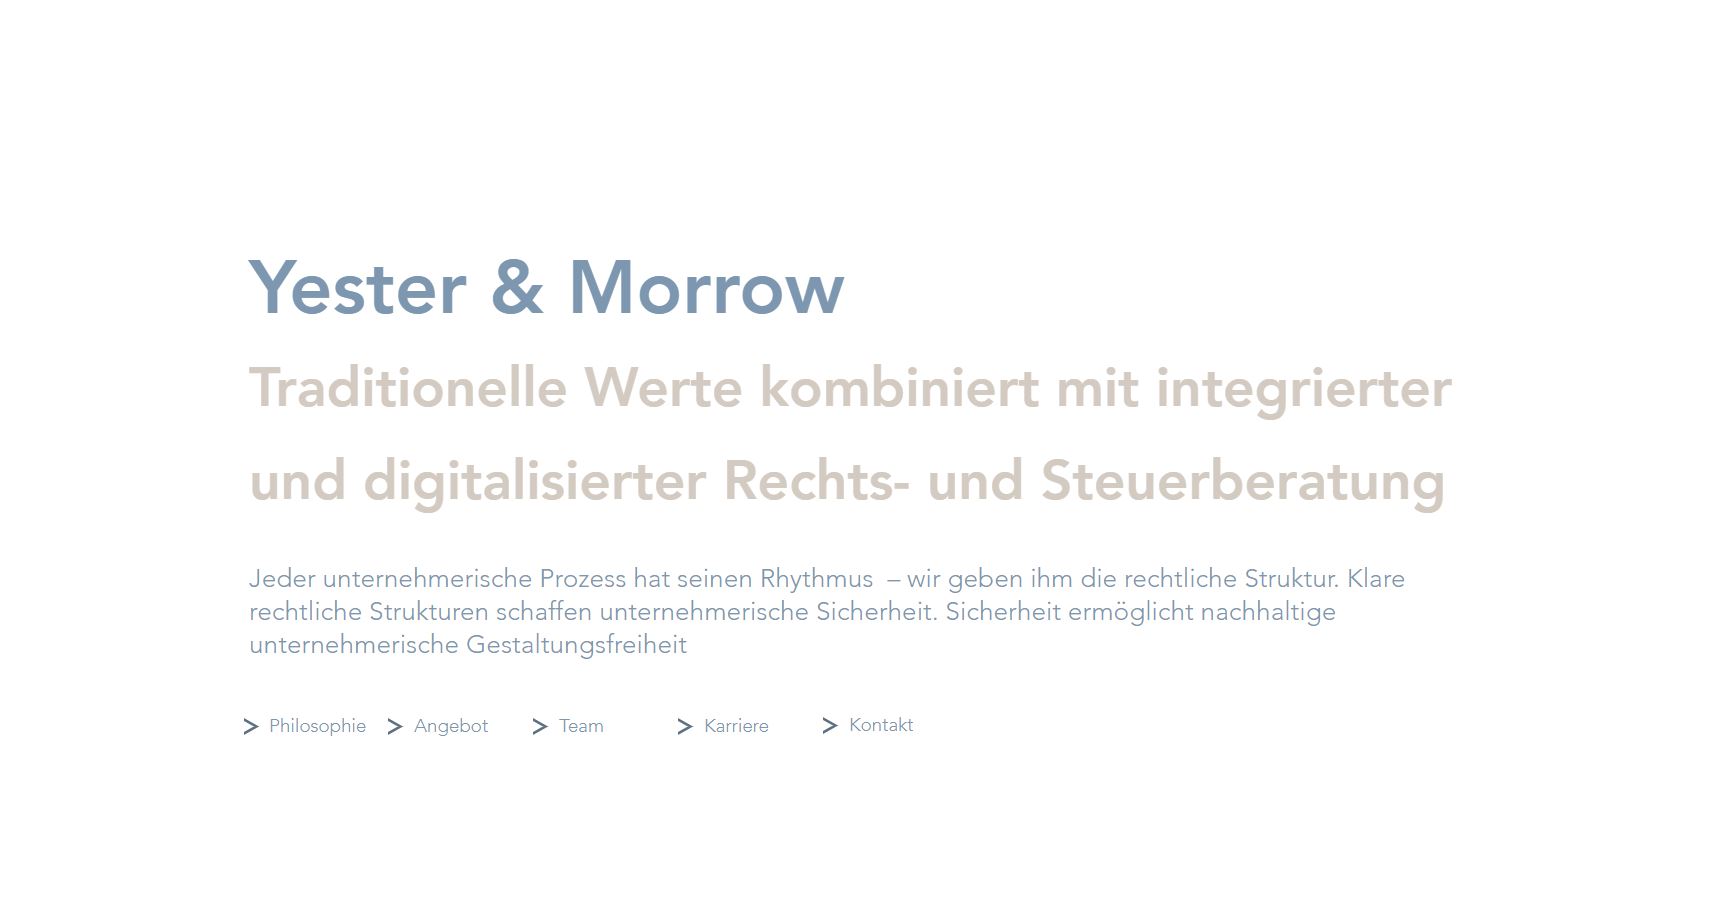 Yester & Morrow eröffnet in Frankfurt und Hamburg